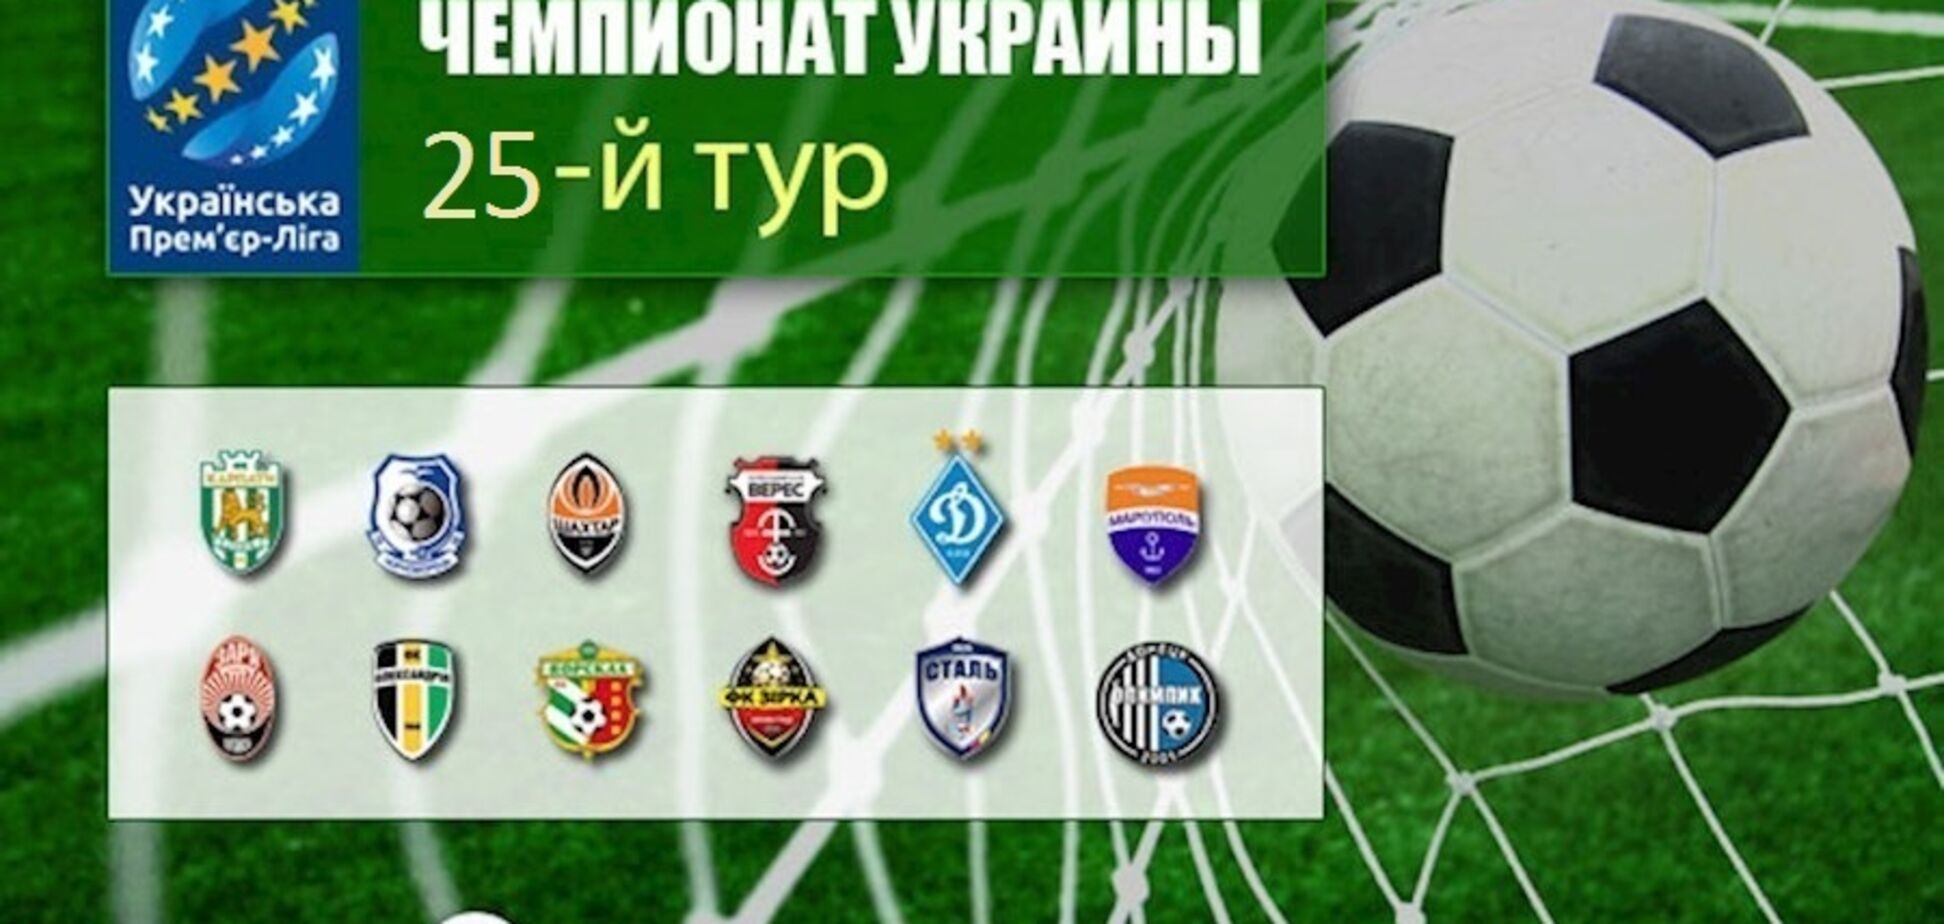 25-й тур чемпіонату України з футболу: результати, огляди